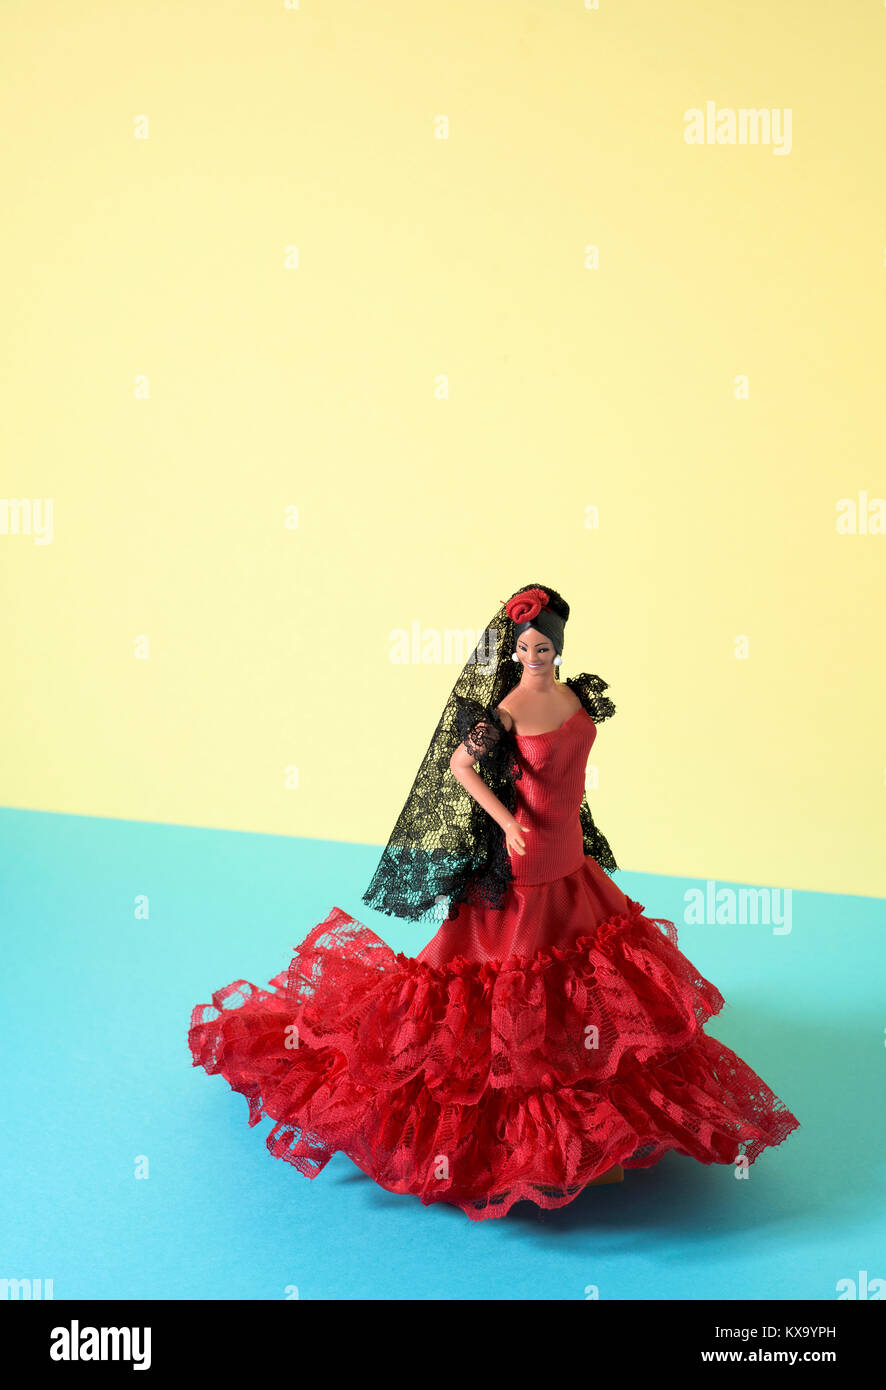 Un tipico spagnolo doll vestita come una ballerina di flamenco, con la caratteristica traje de flamenca, il tipico dot-abito modellato in un giallo e blu Foto Stock